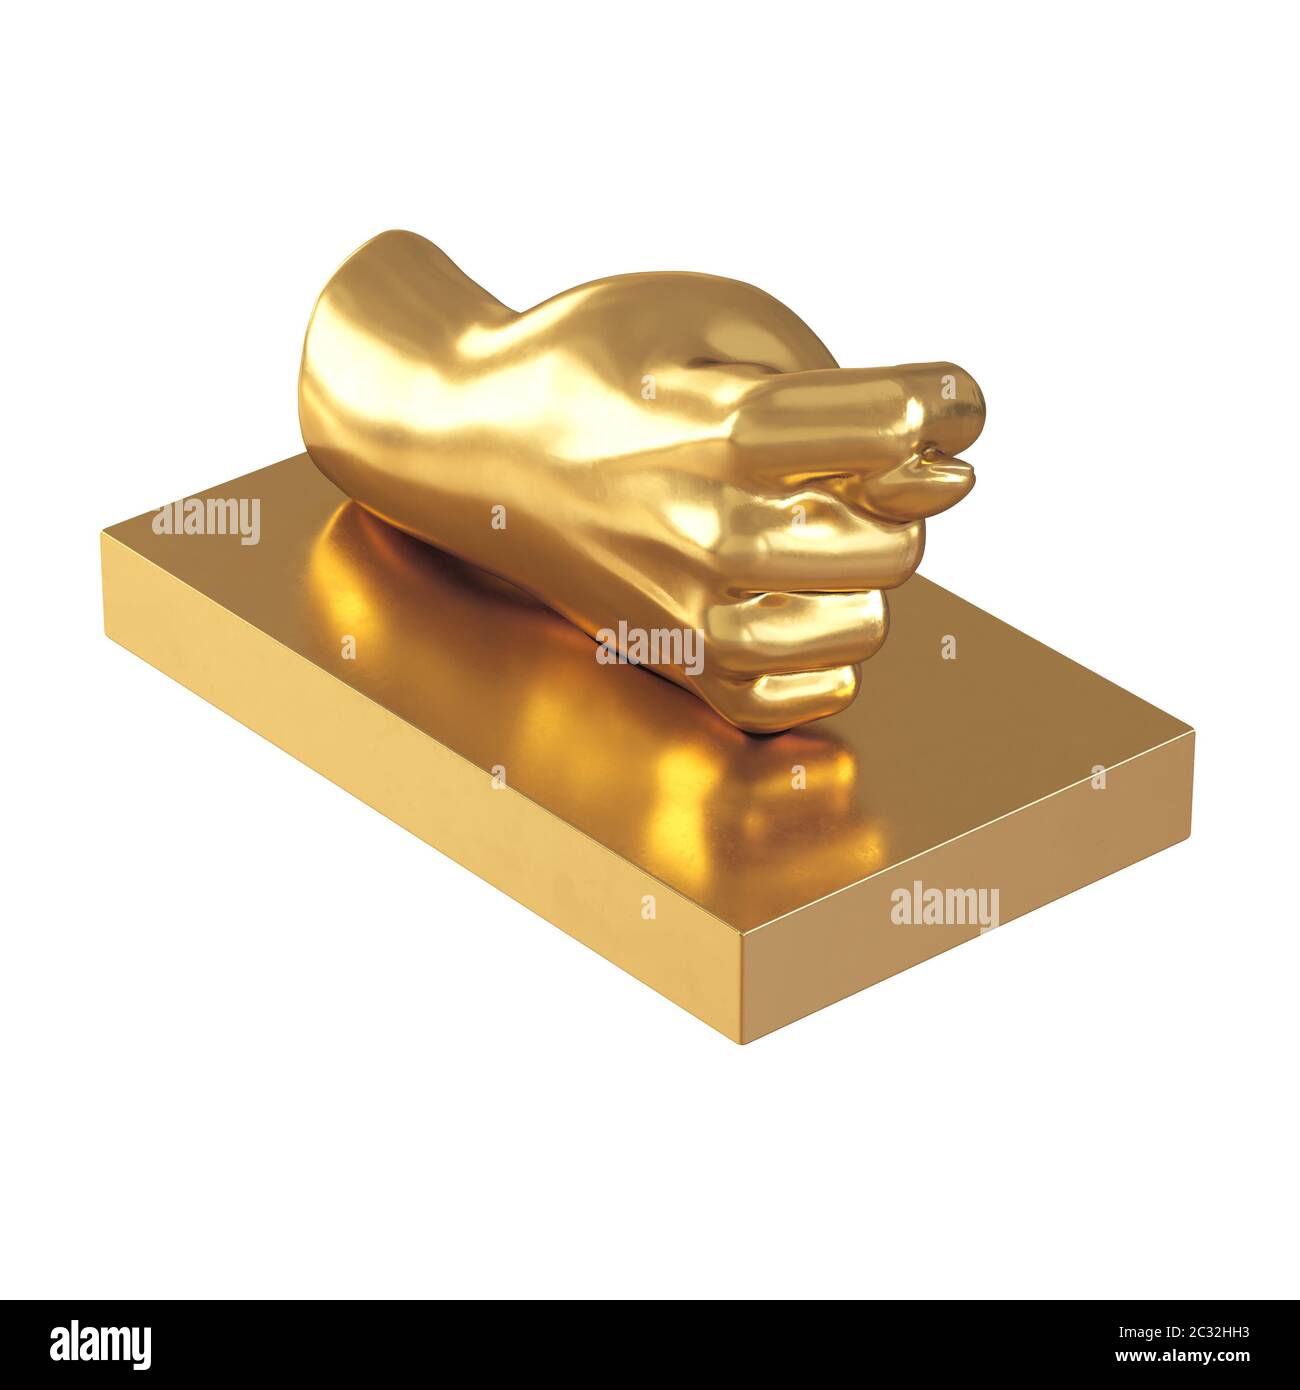 Eine goldene Figur in Form einer Hand mit einem Daumen, der zwischen dem Index und der Mitte auf weißem Hintergrund geklebt ist. 3d-Rendering Stockfoto